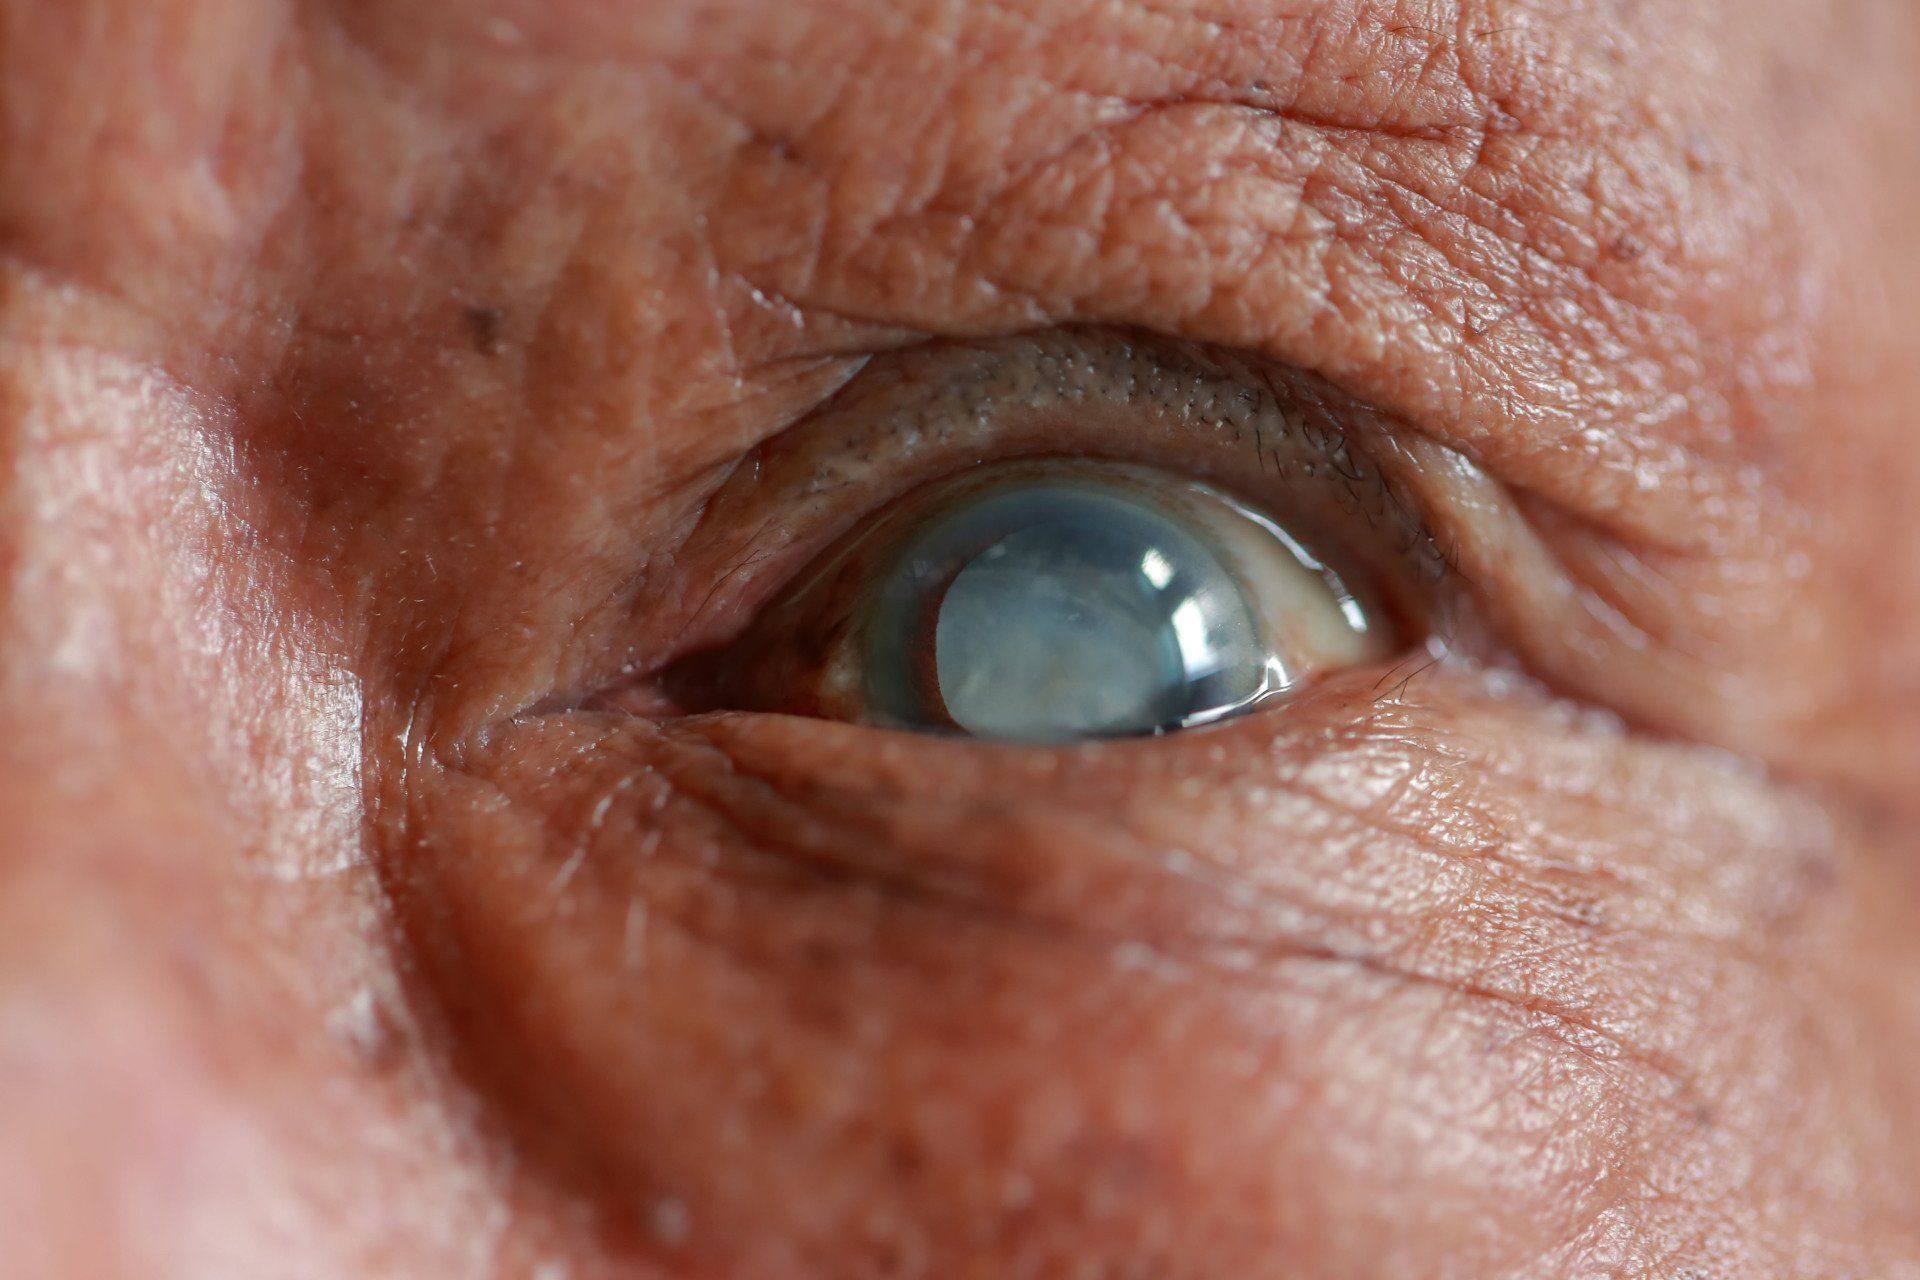 Cataract correction